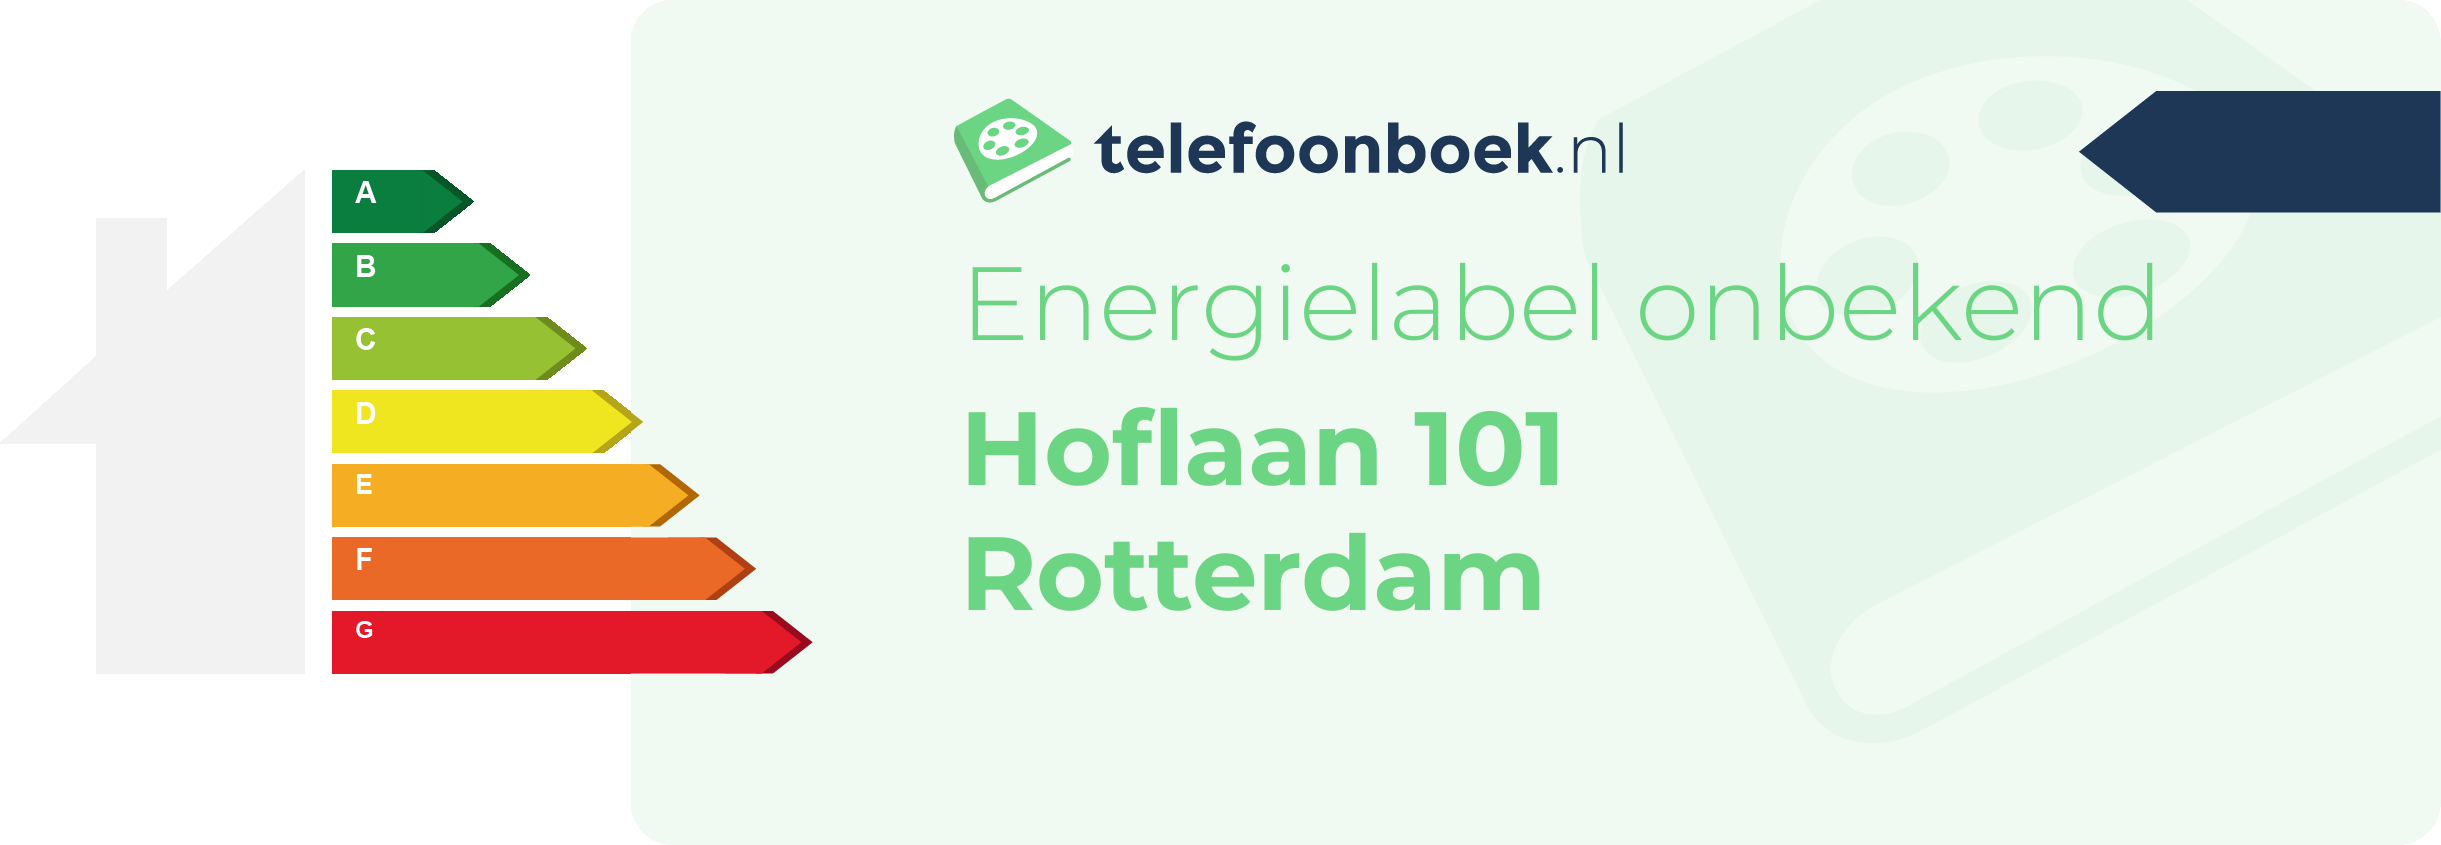 Energielabel Hoflaan 101 Rotterdam